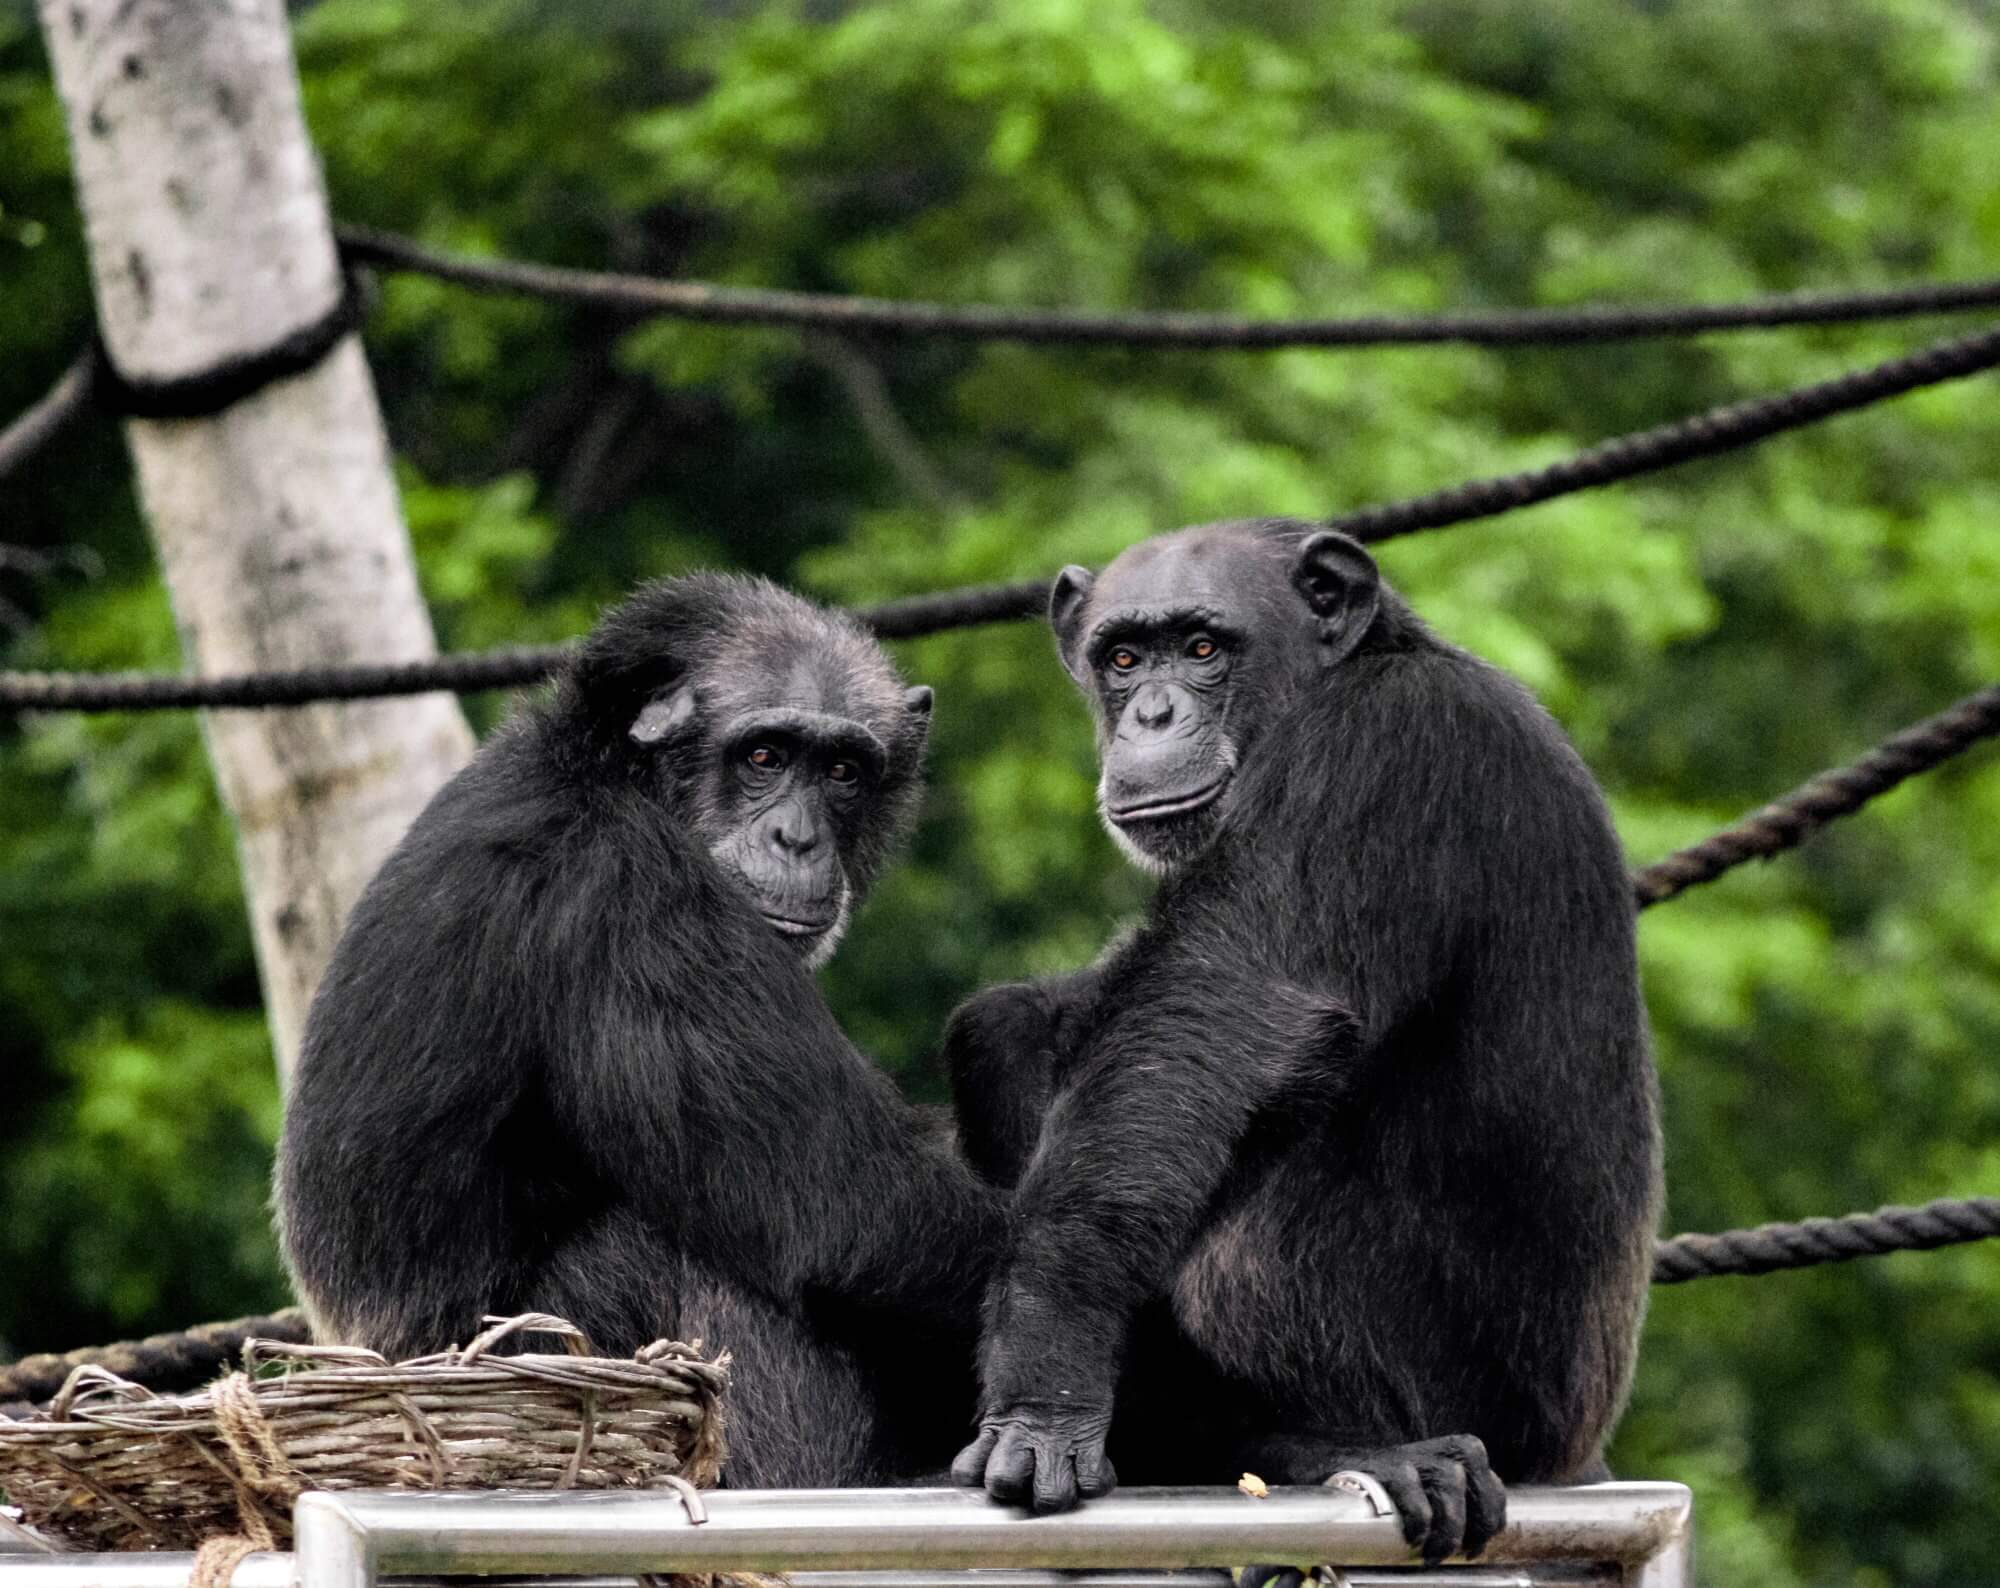 #映像を発見した新しいコミュニケーションツールとチンパンジーの親族